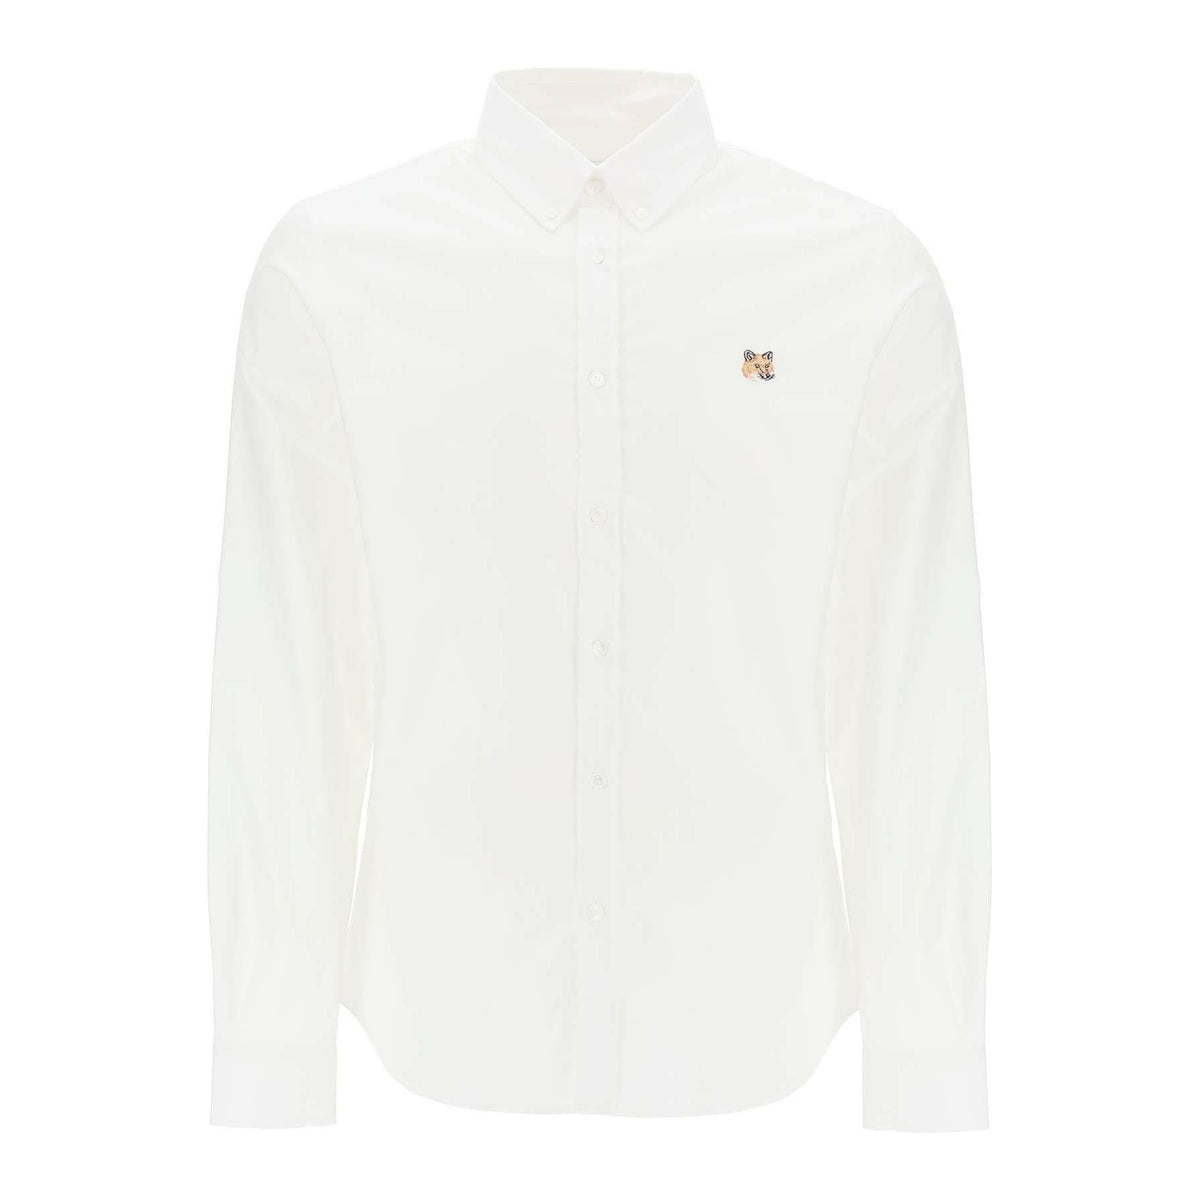 White Oxford Cotton Shirt MAISON KITSUNE JOHN JULIA.